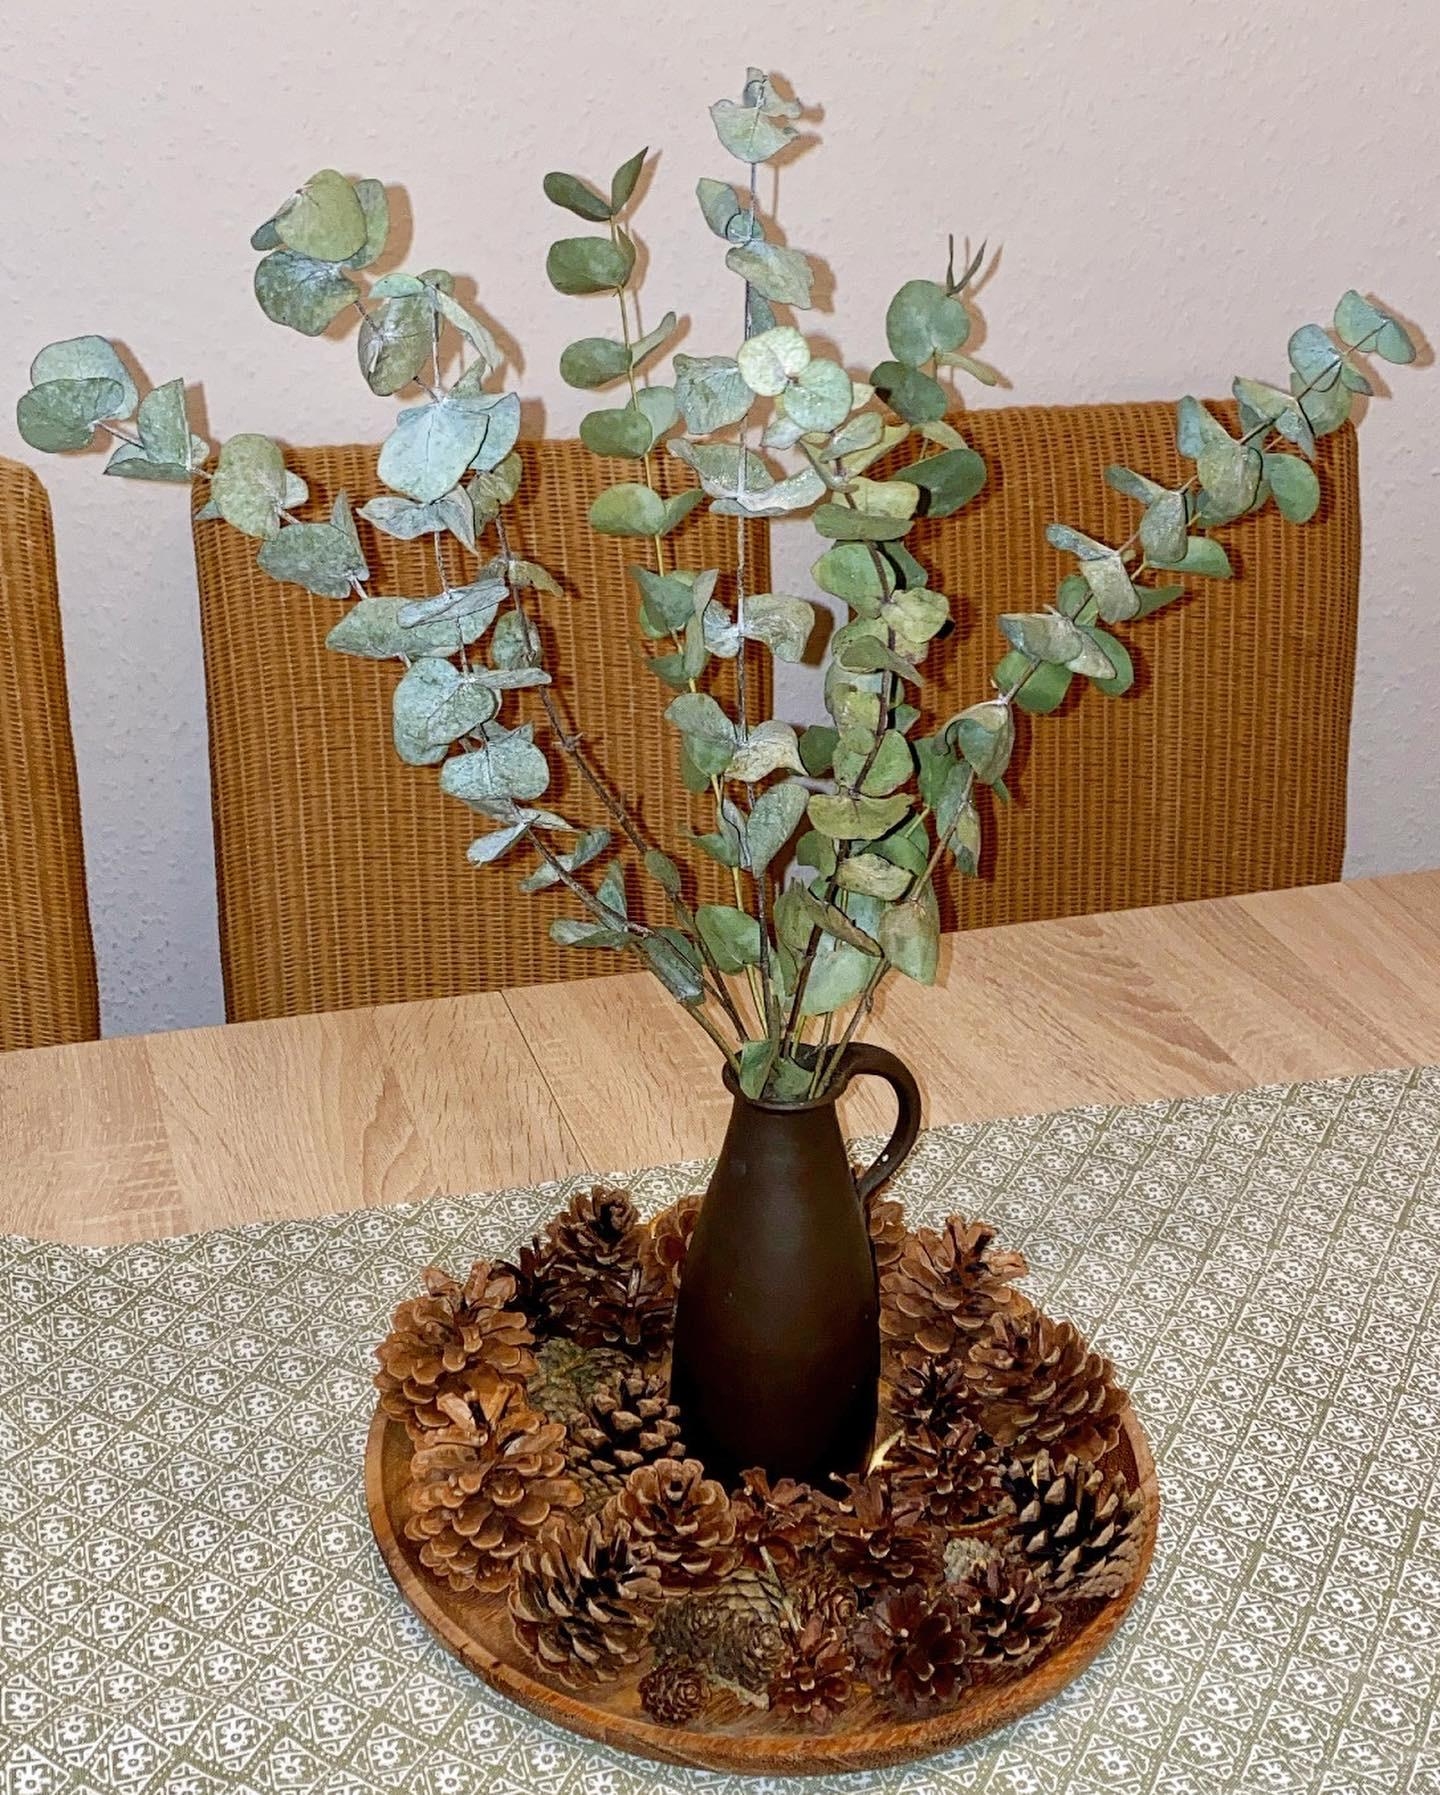 Einfache Deko mit Eukalyptus und Zapfen 

#eukalyptus #zapfen #dekoration #winterdeko #dekoideen #deko #dekotablett